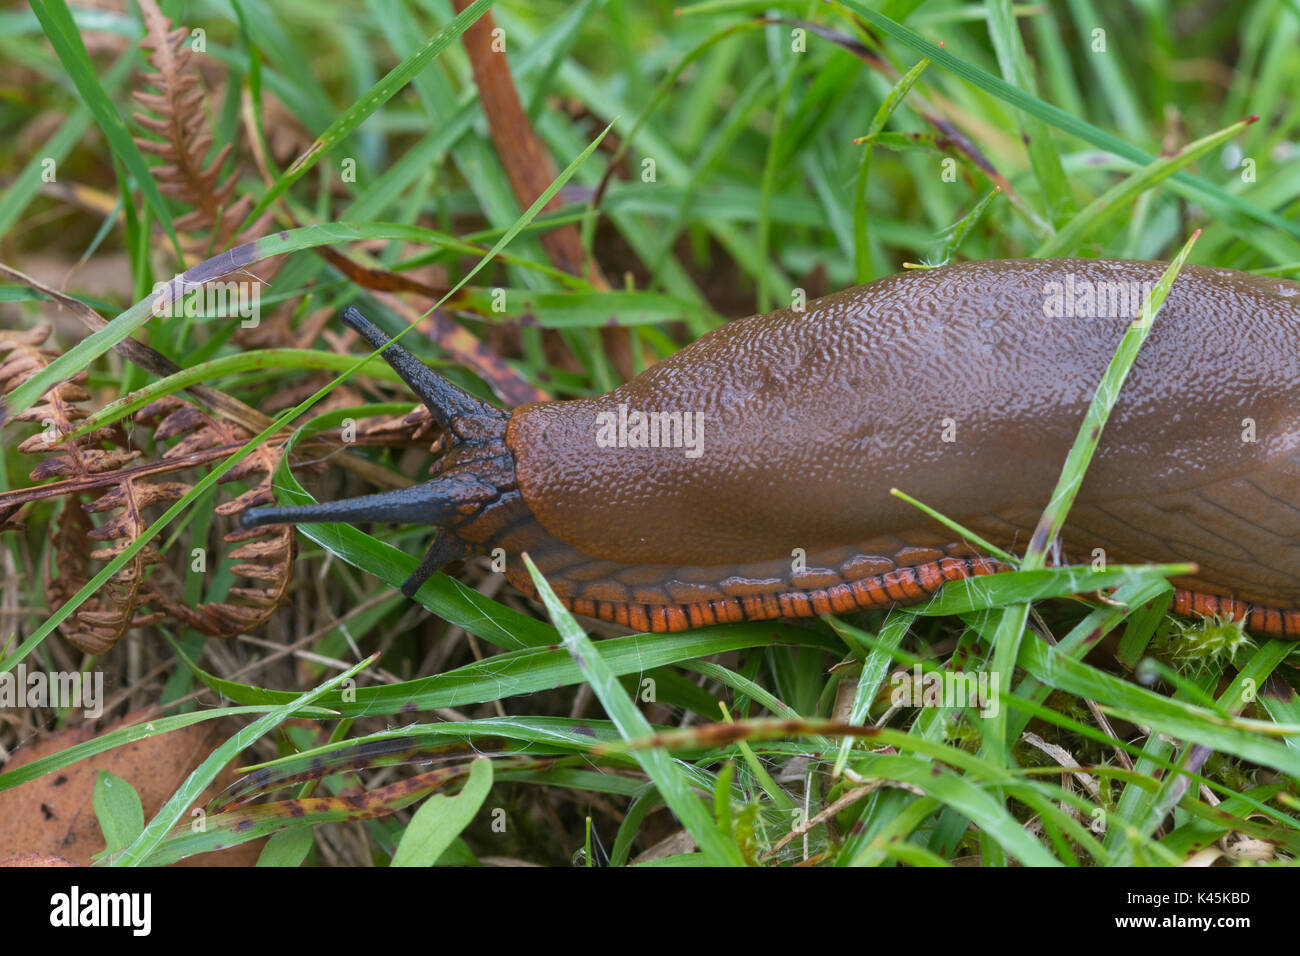 In der Nähe von großen braunen Slug mit orange Fuß - Fringe (Arion ater Rufus) Stockfoto